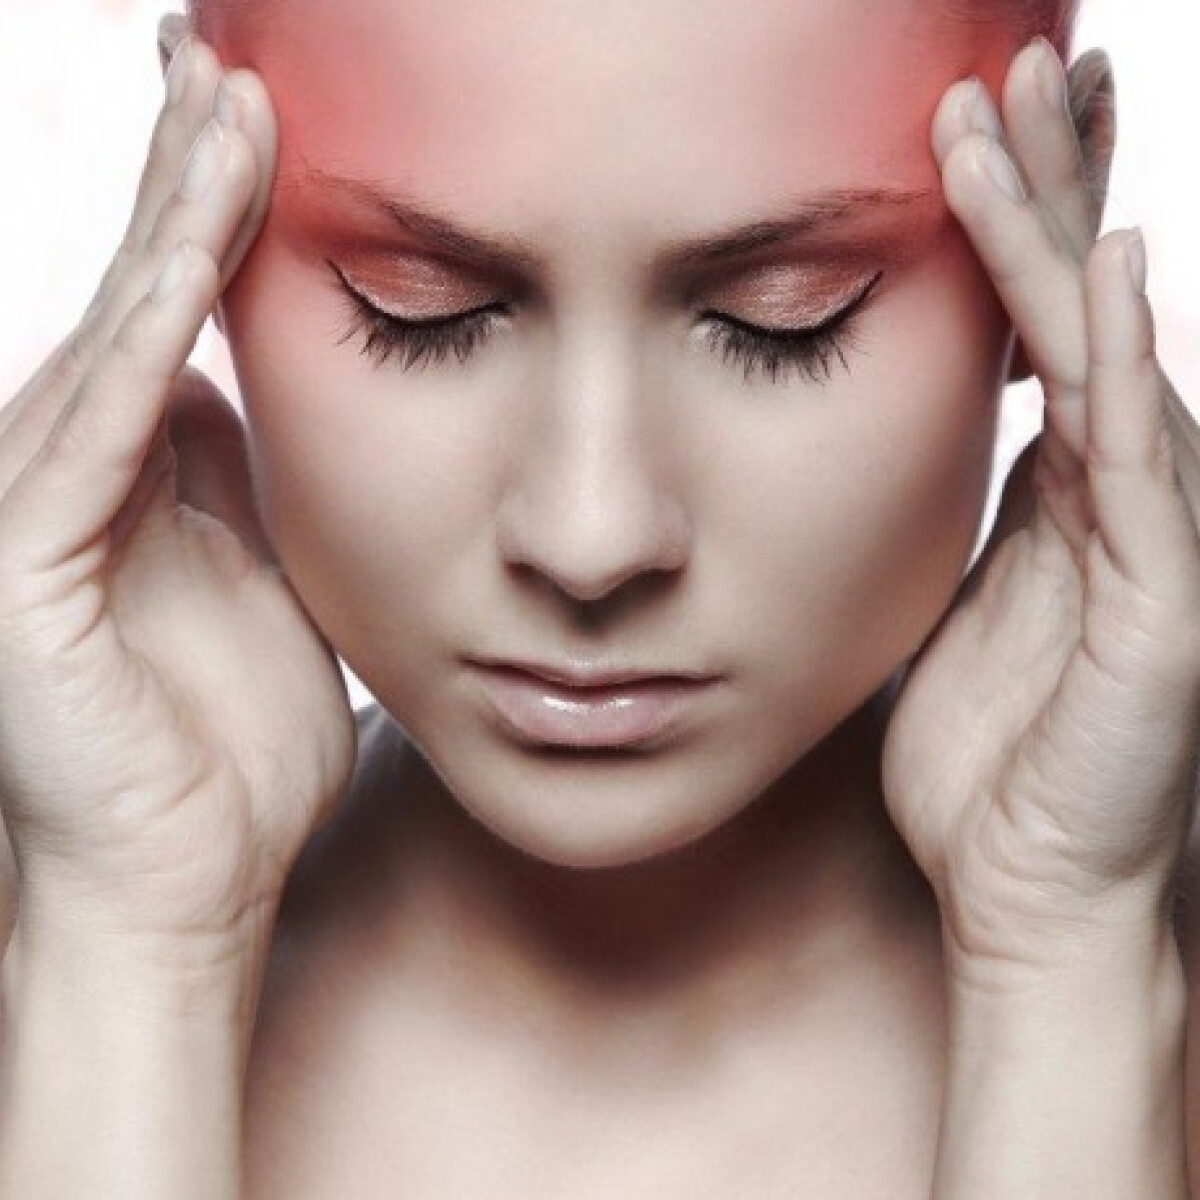 Gyakran fáj a fejed? A fejfájás-specialista tanácsai - 2. rész